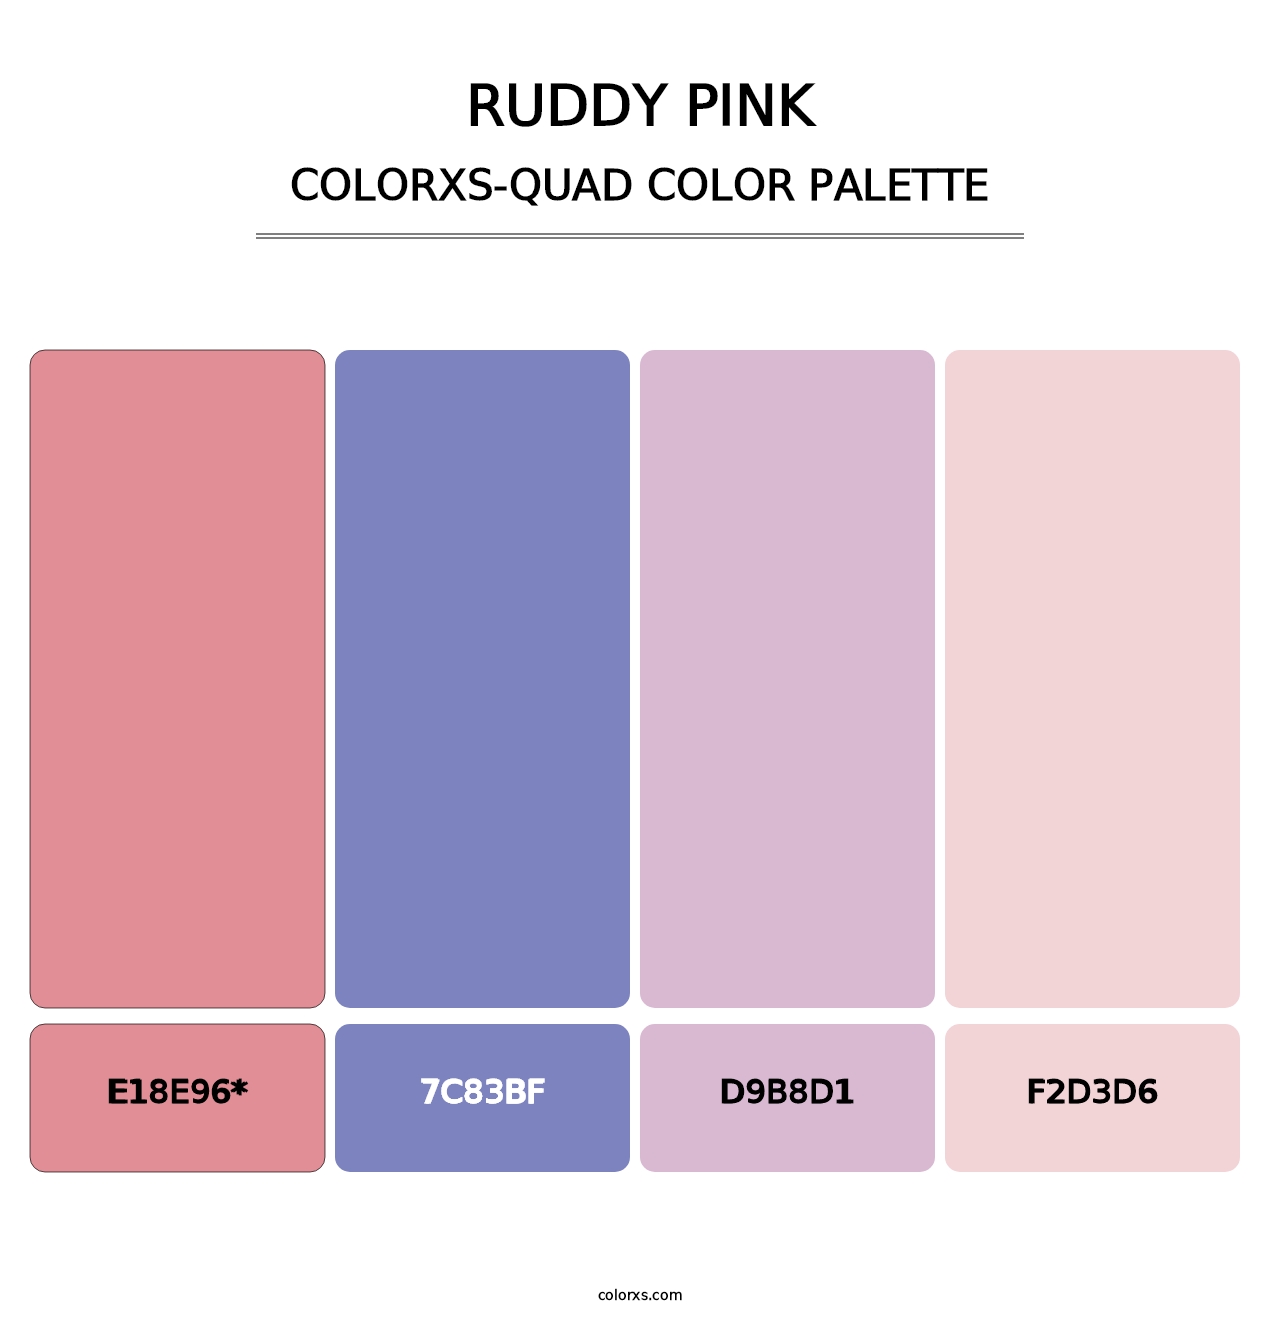 Ruddy Pink - Colorxs Quad Palette